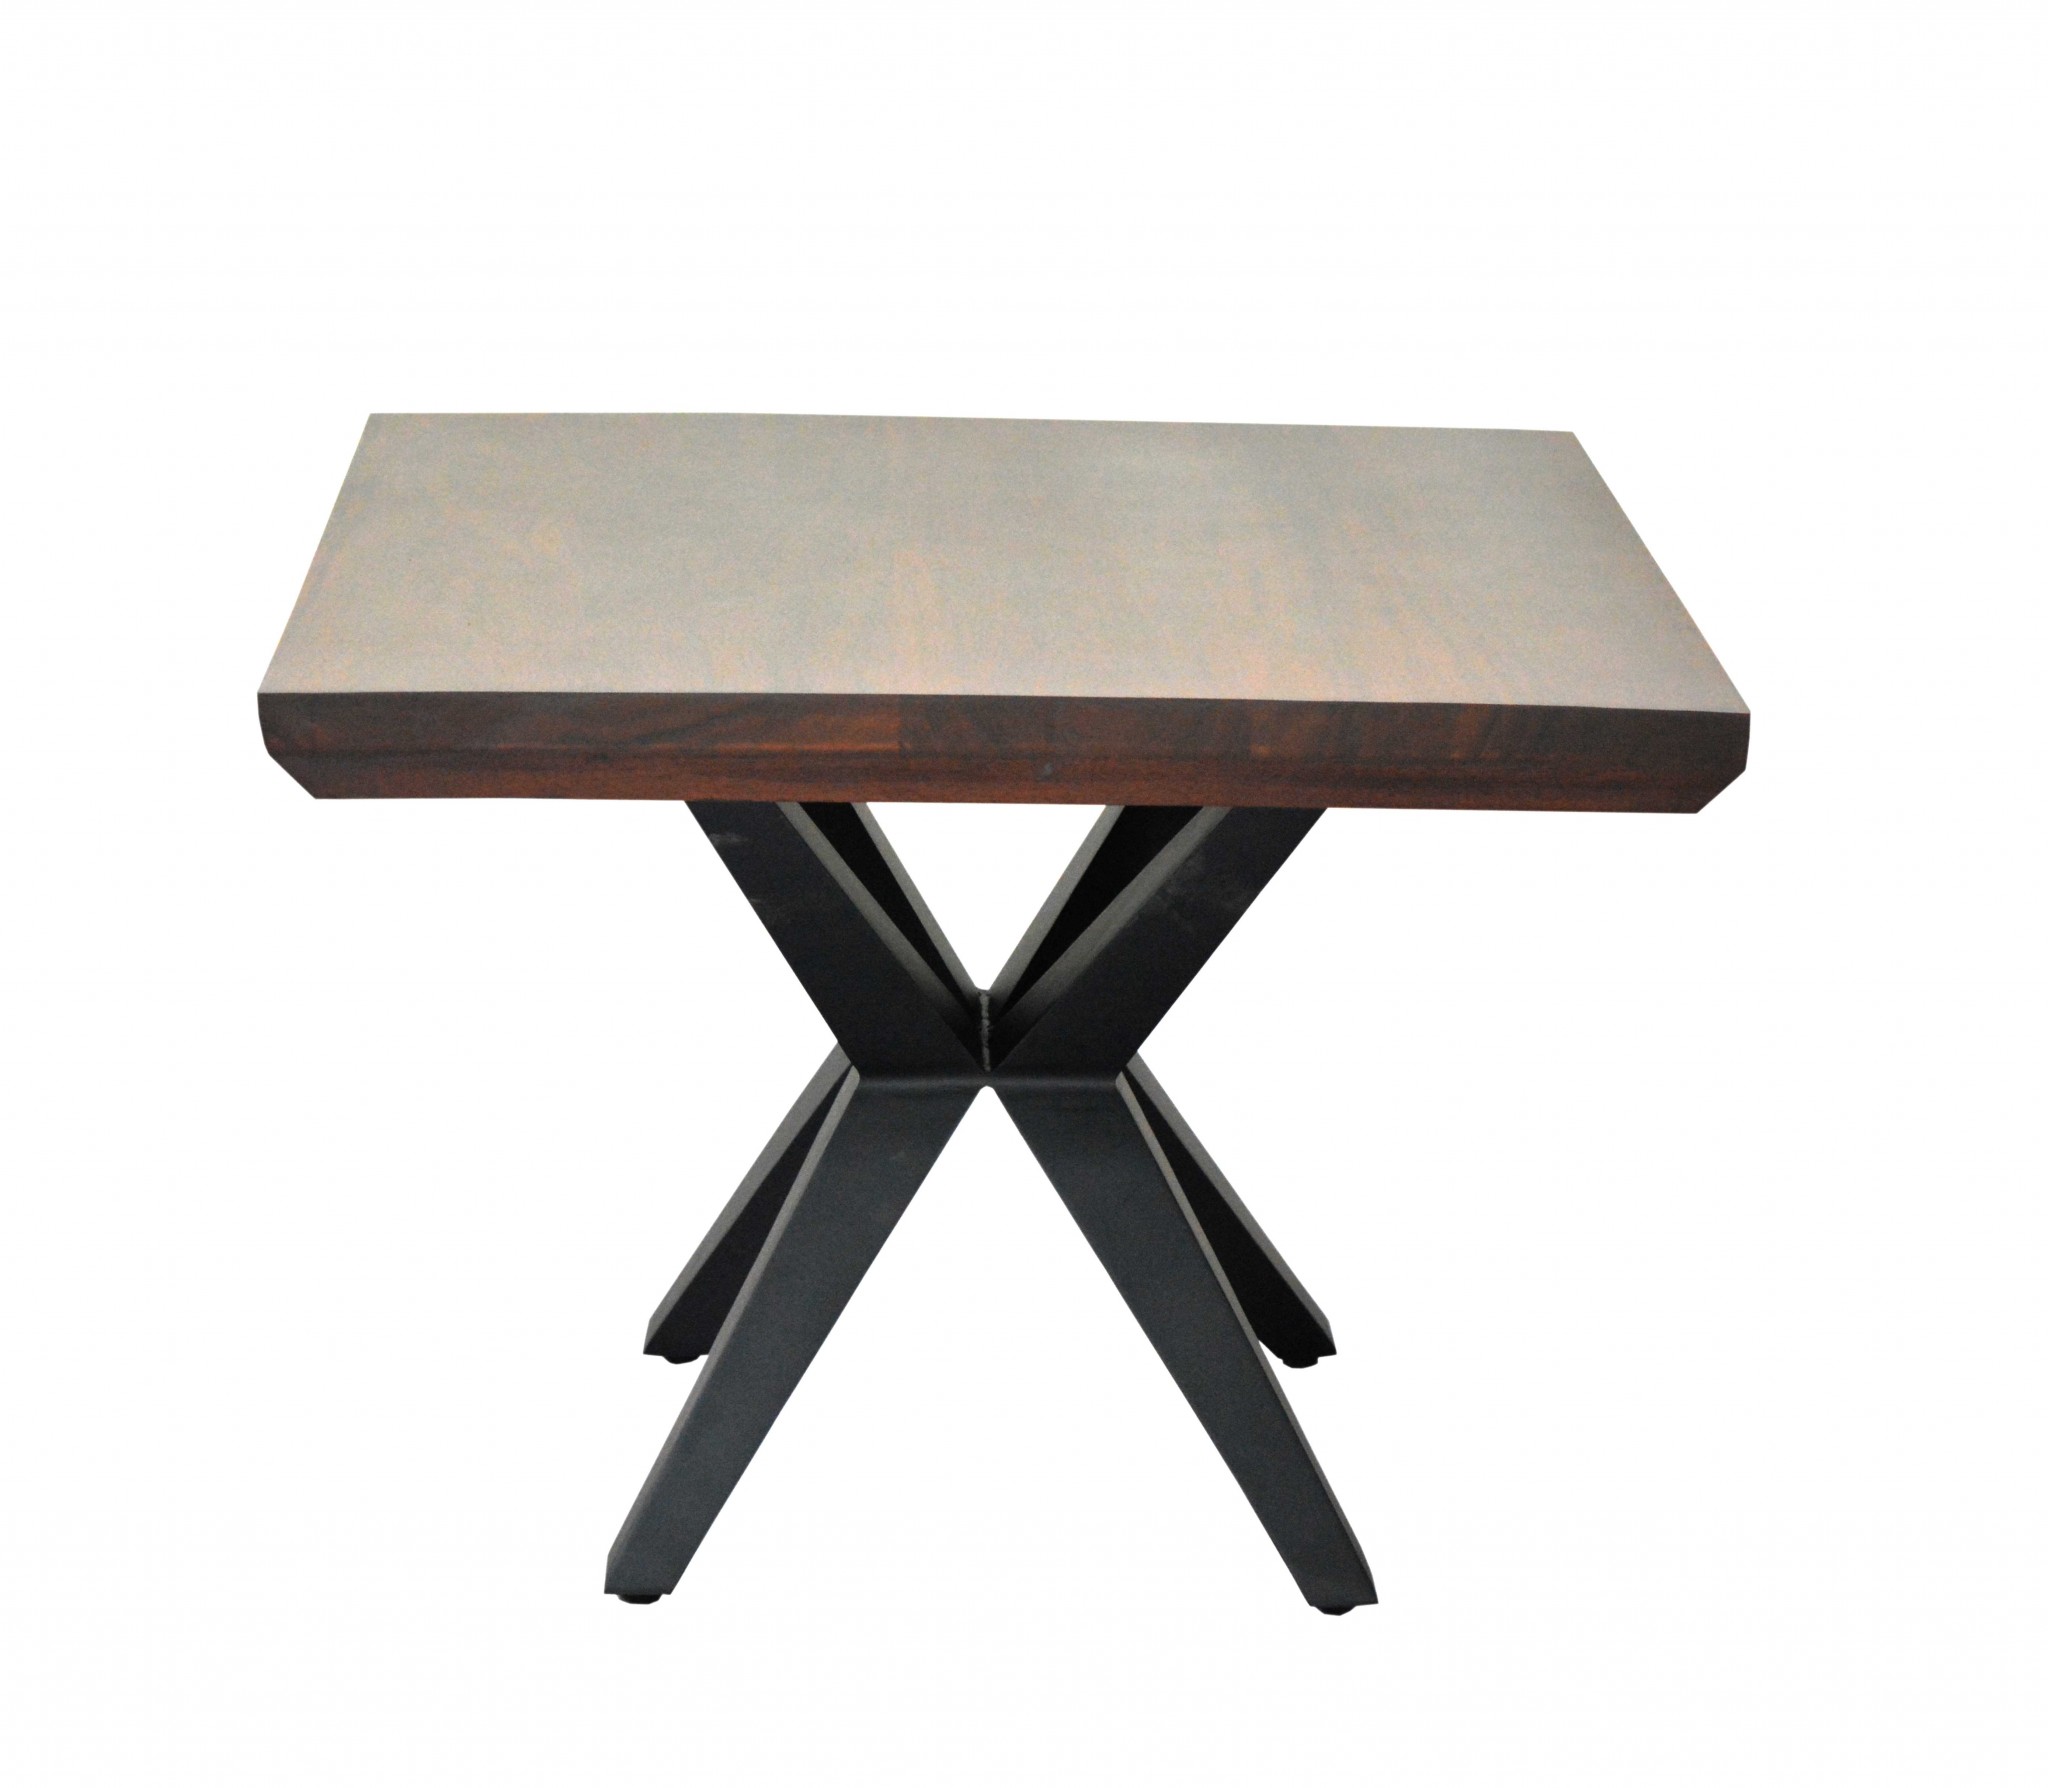 24" X 24" X 18" Brown Black Wood Metal Side Table